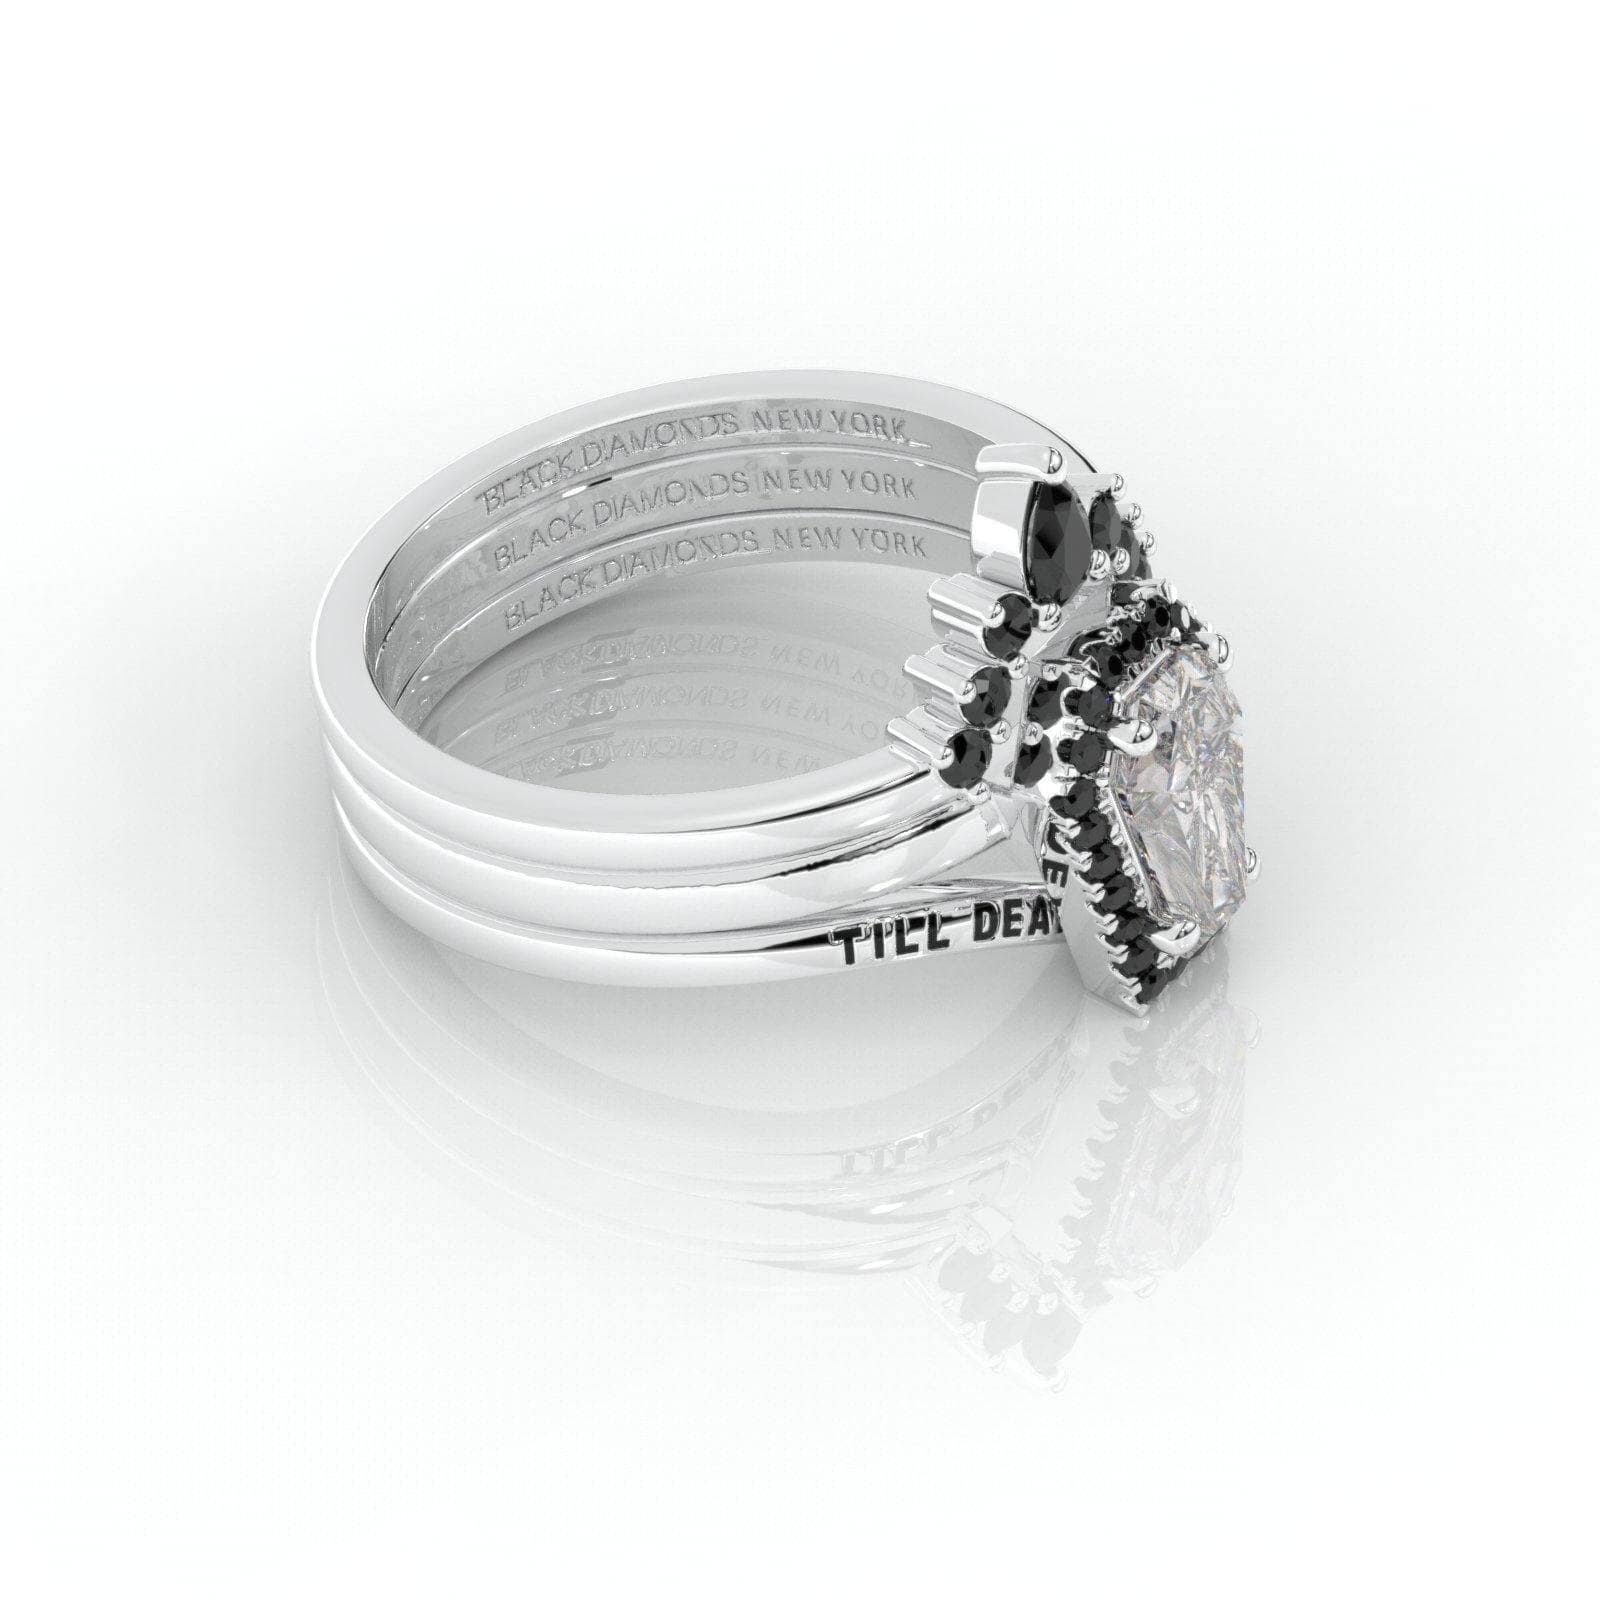 Till Death Do Us Part Rings- Rare Coffin Cut Moissanite 14k White Gold Ring Set-Black Diamonds New York